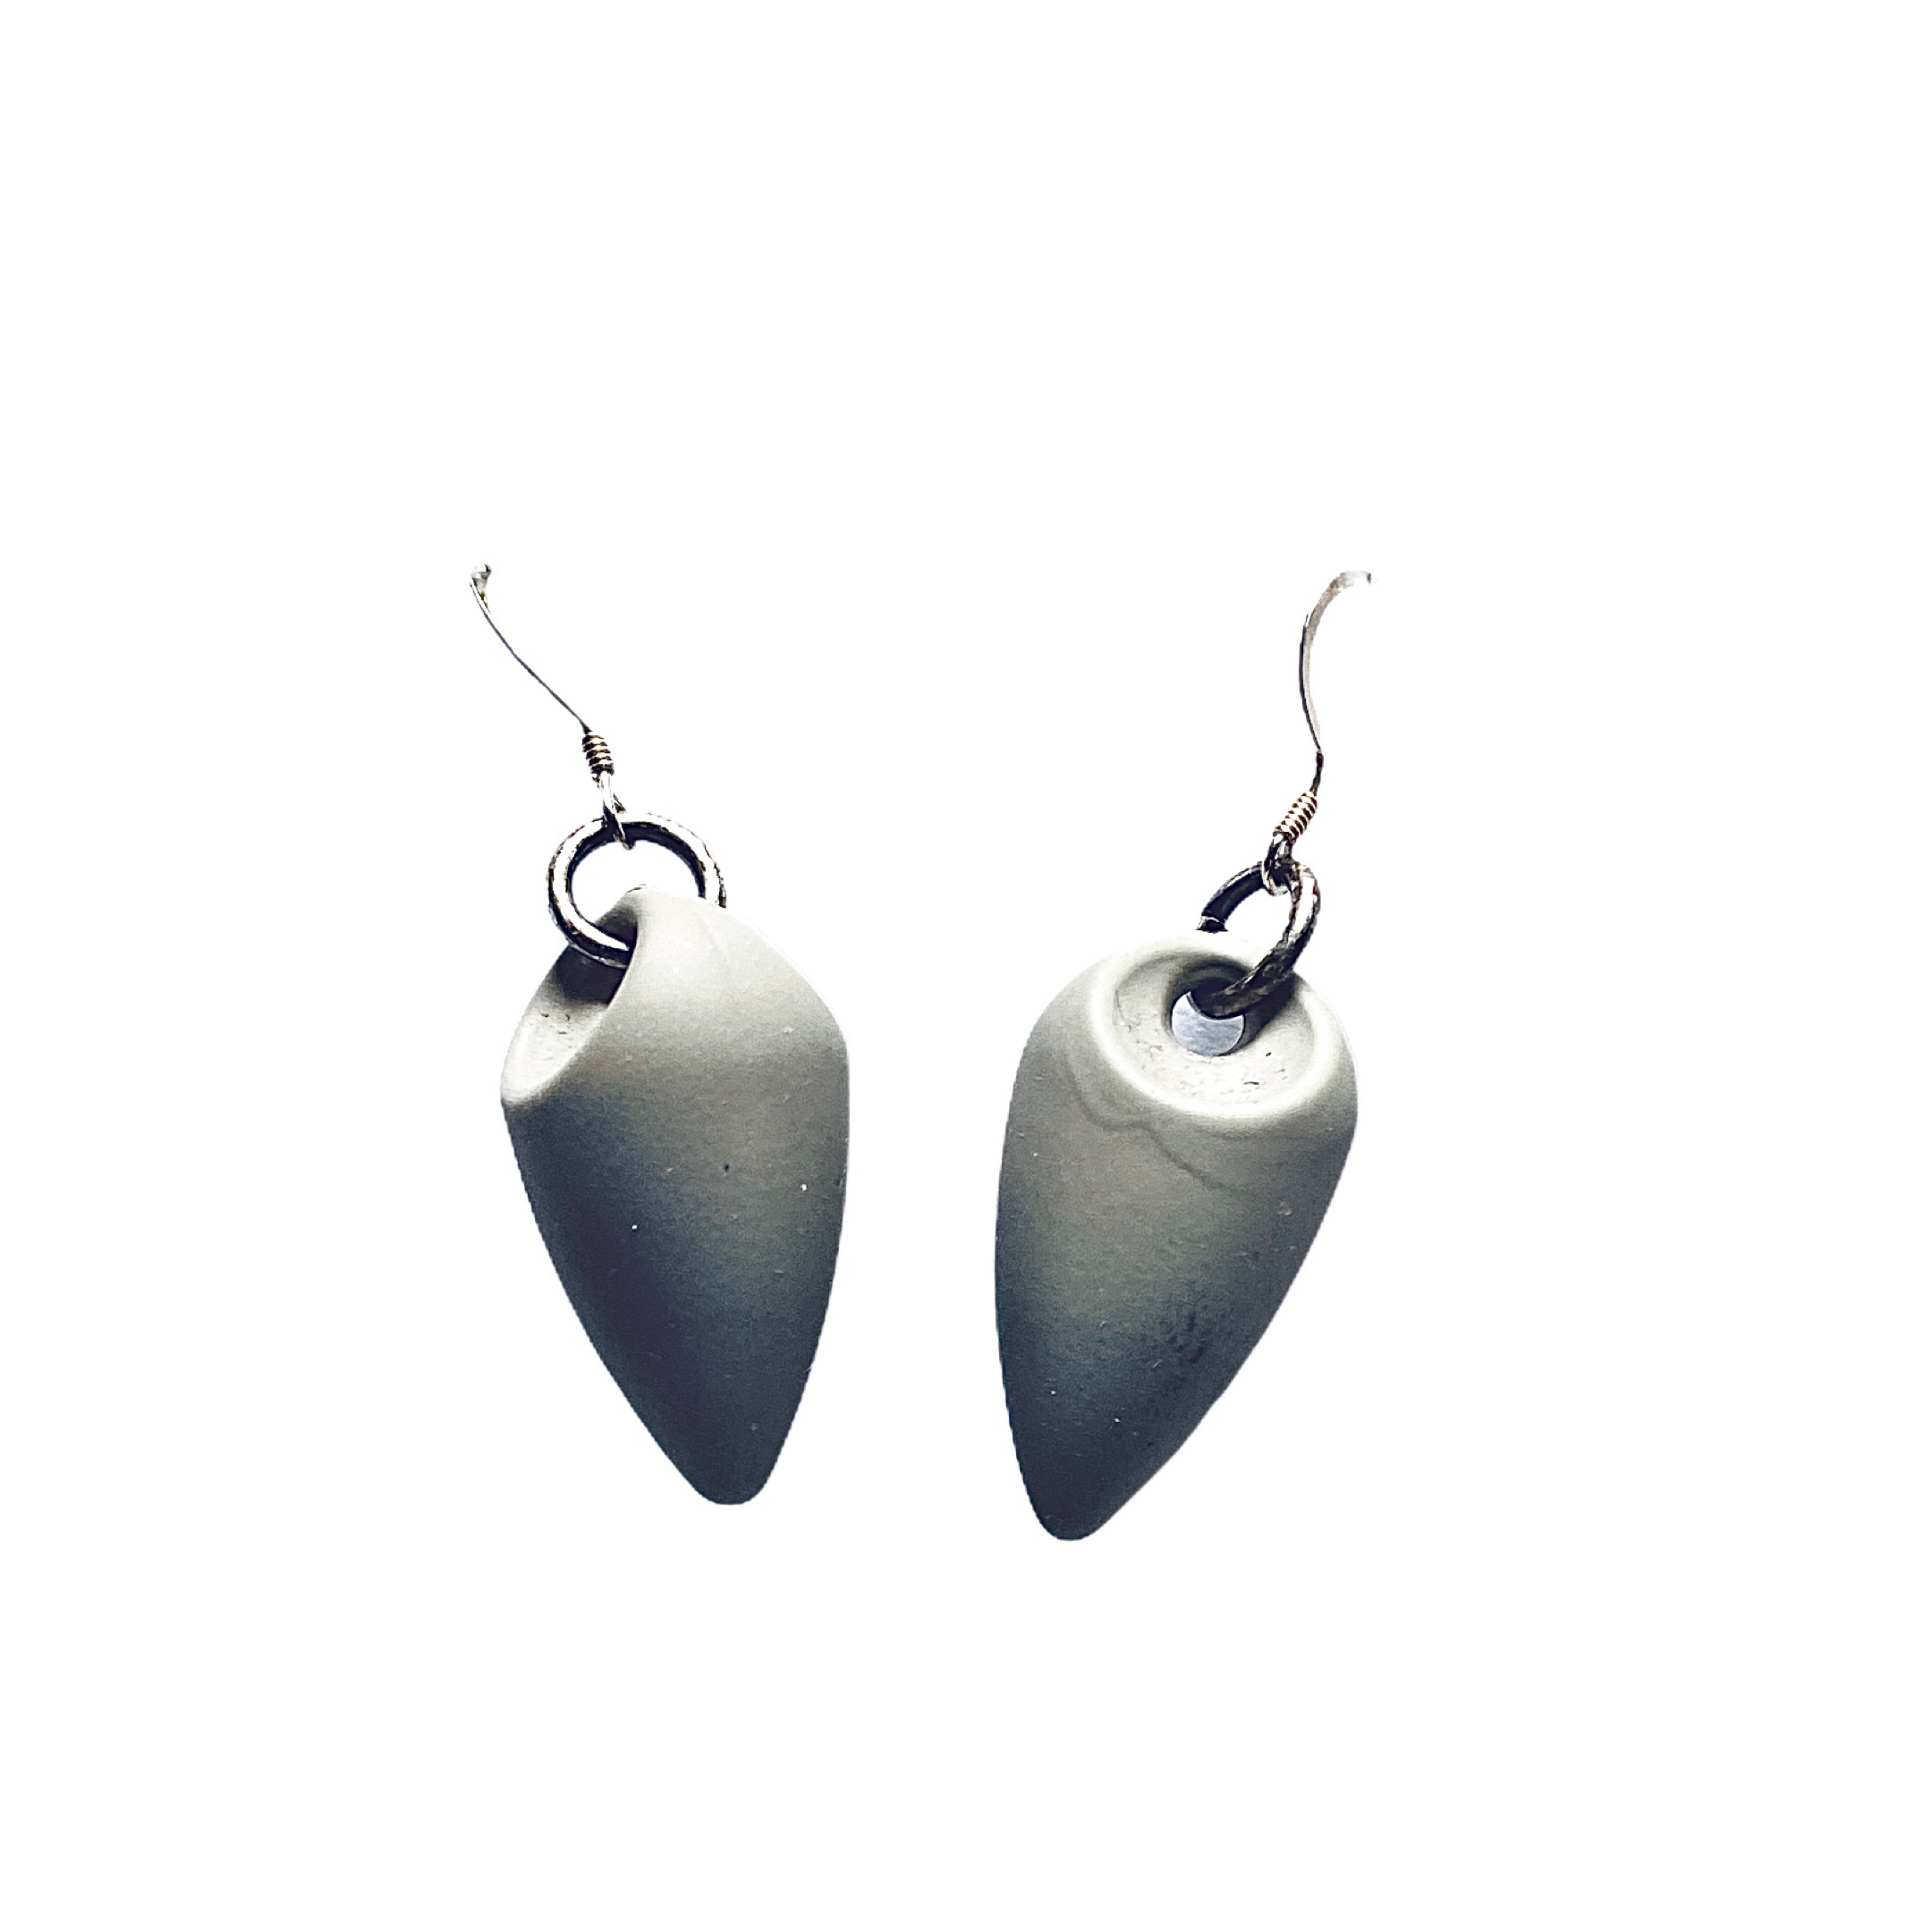 Grey Recycled Resin Earrings - Irit Sorokin Designs Jewelry